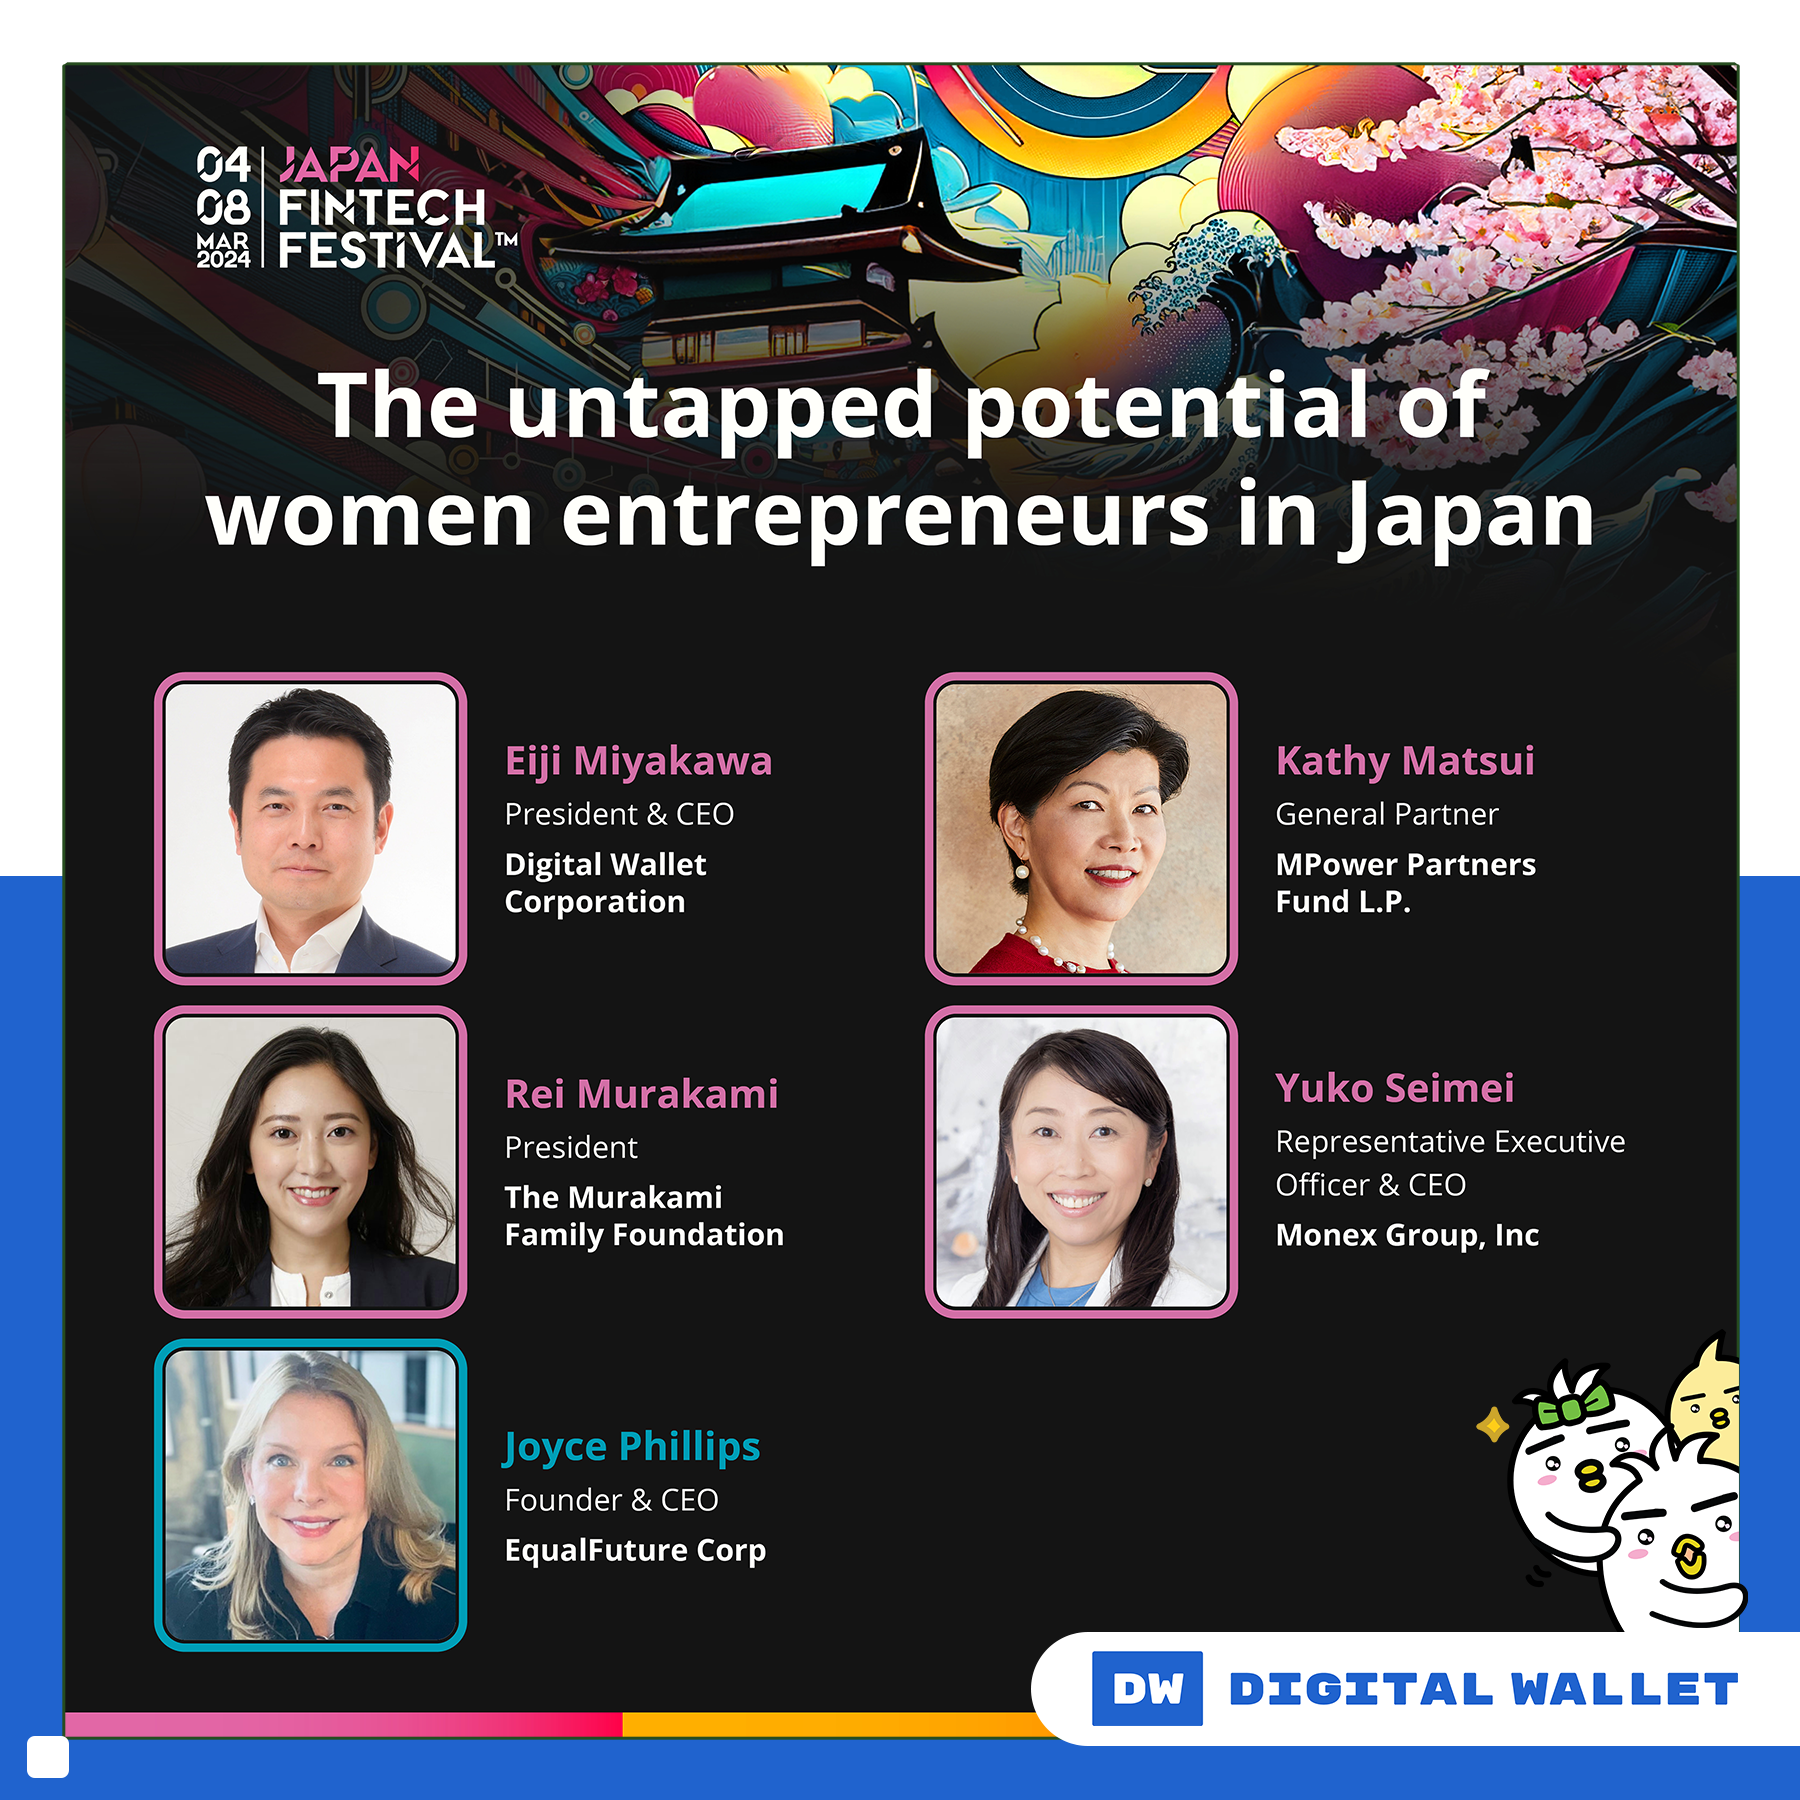 fintech festival japan speakers women entrepreneur eiji miyakawa